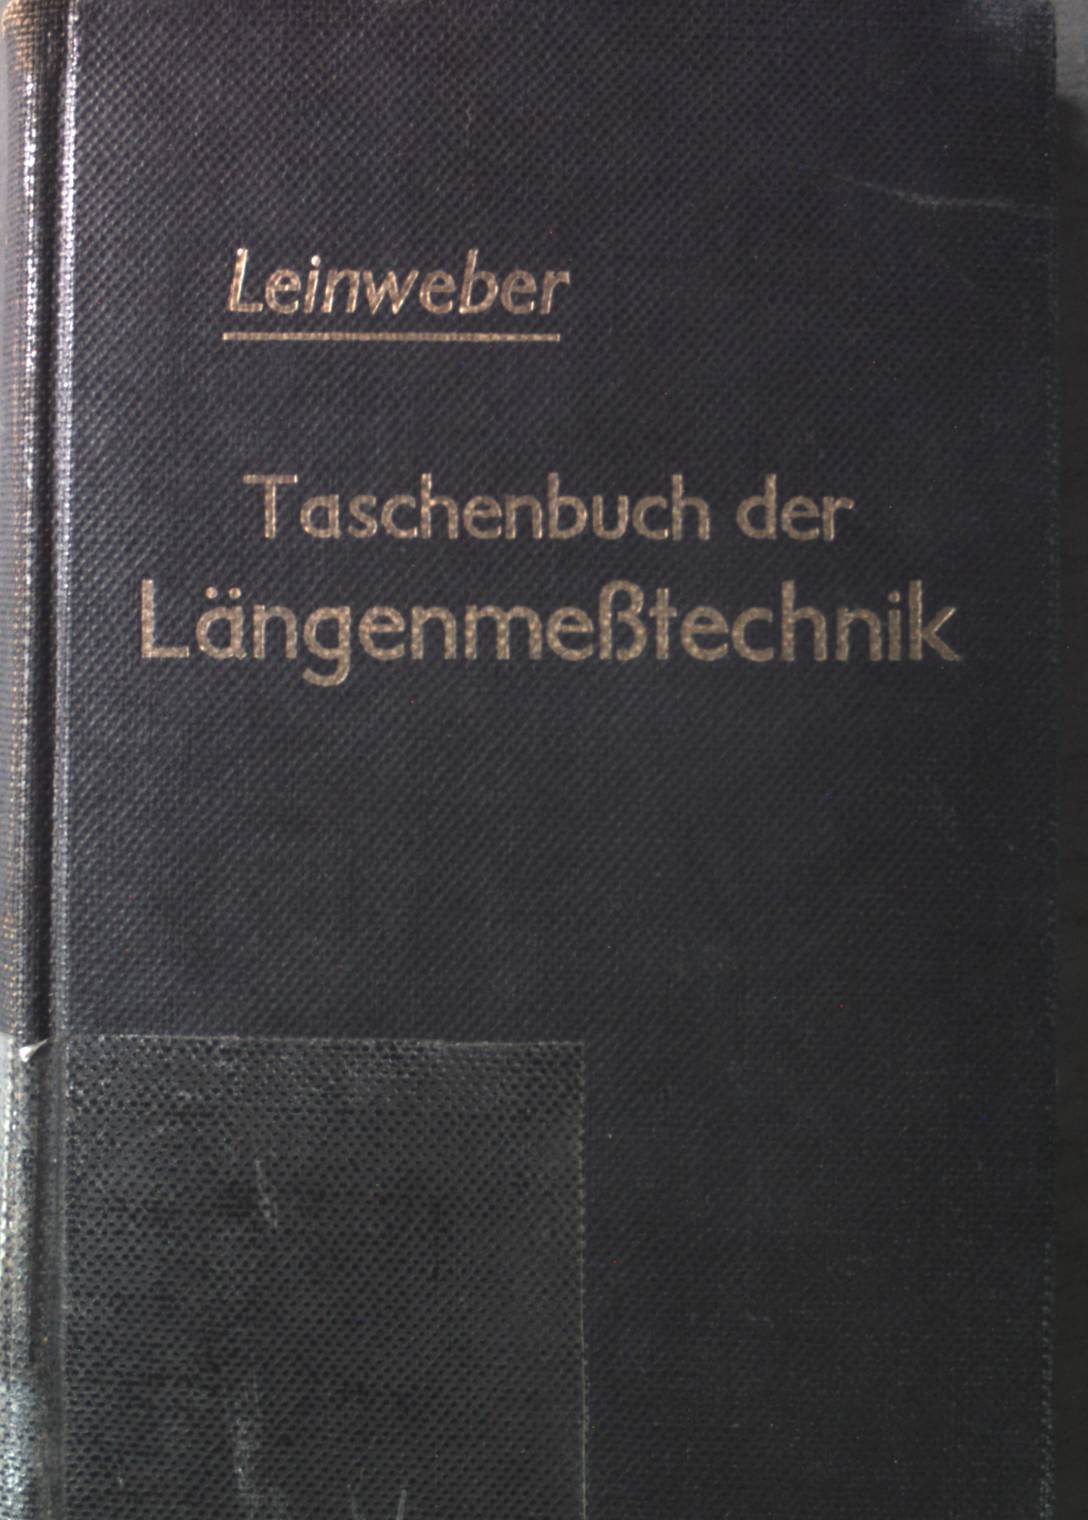 Taschenbuch der Längenmeßtechnik für Konstruktion/ Werkstatt / Meßraum und Kontrolle. - Leinweber, Paul, G. Berndt und O. Kienzle